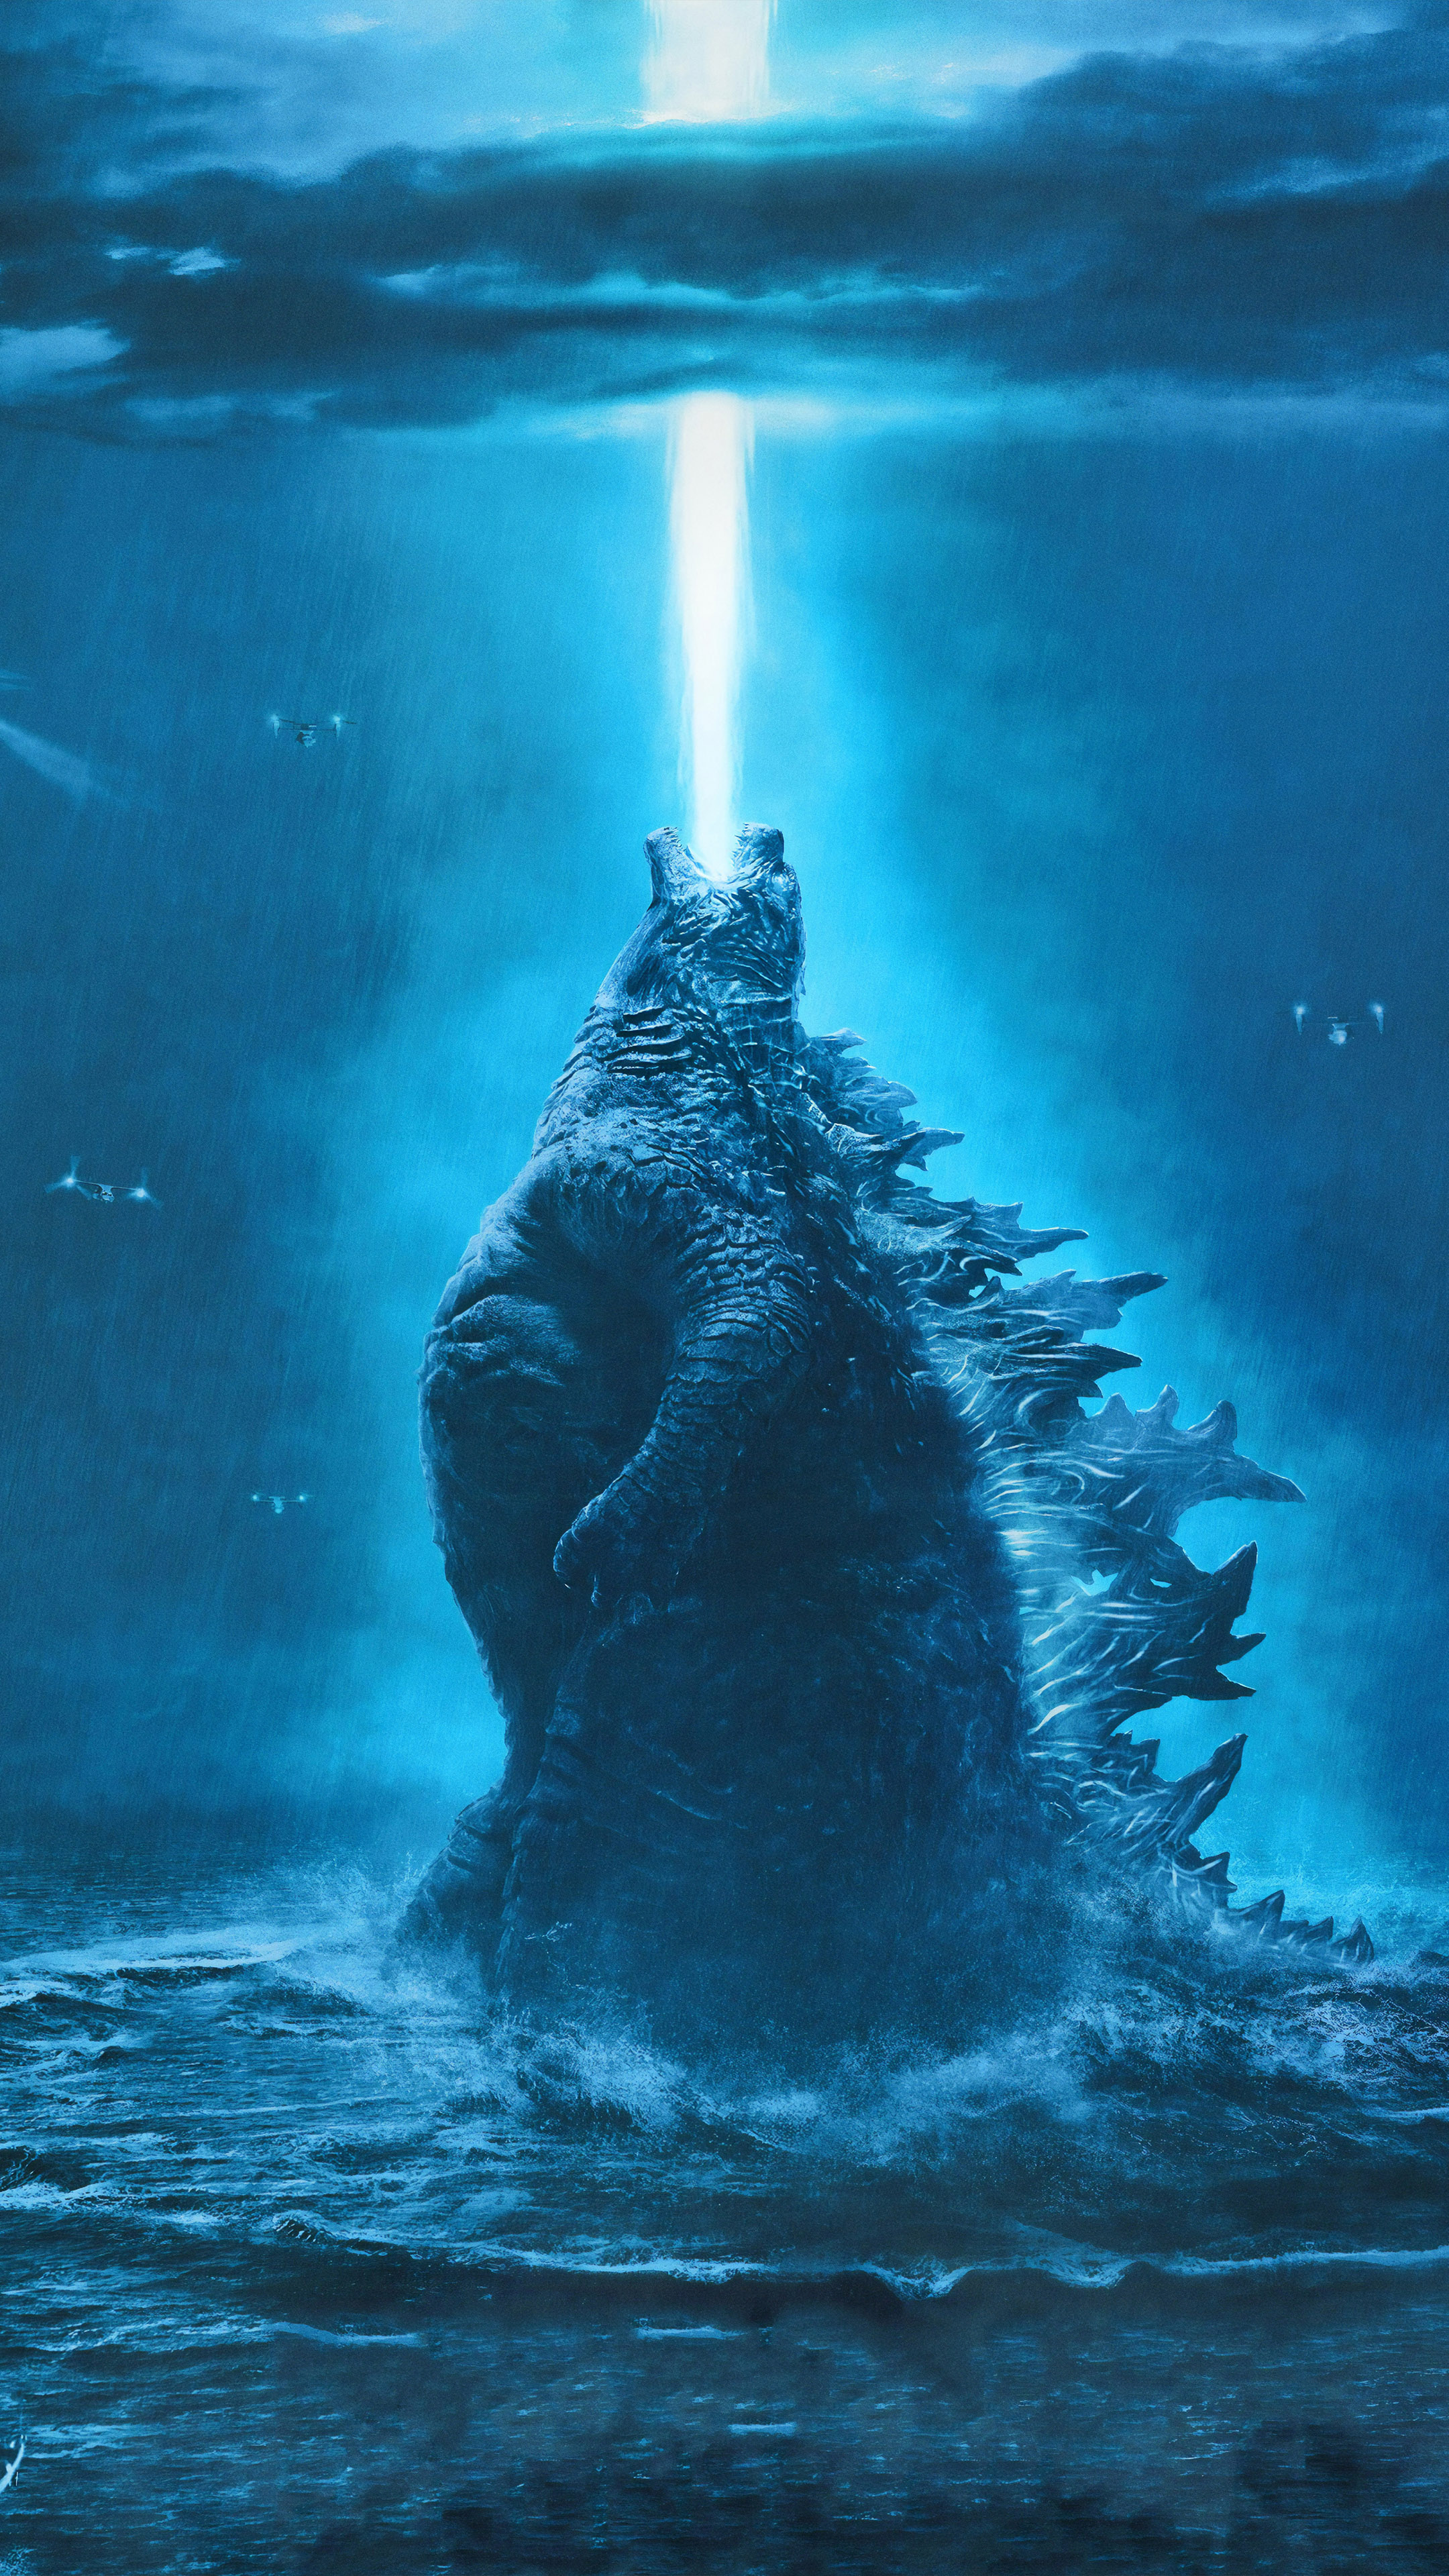 Cảm nhận tất cả cường độ của hình ảnh Godzilla 4K! Xem ngay những khoảnh khắc đáng sợ nhất của con quái vật Godzilla trong các tác phẩm phim, với chất lượng hình ảnh cực kì sắc nét và sống động. Không gì có thể so sánh được với trải nghiệm xem phim ấn tượng này.